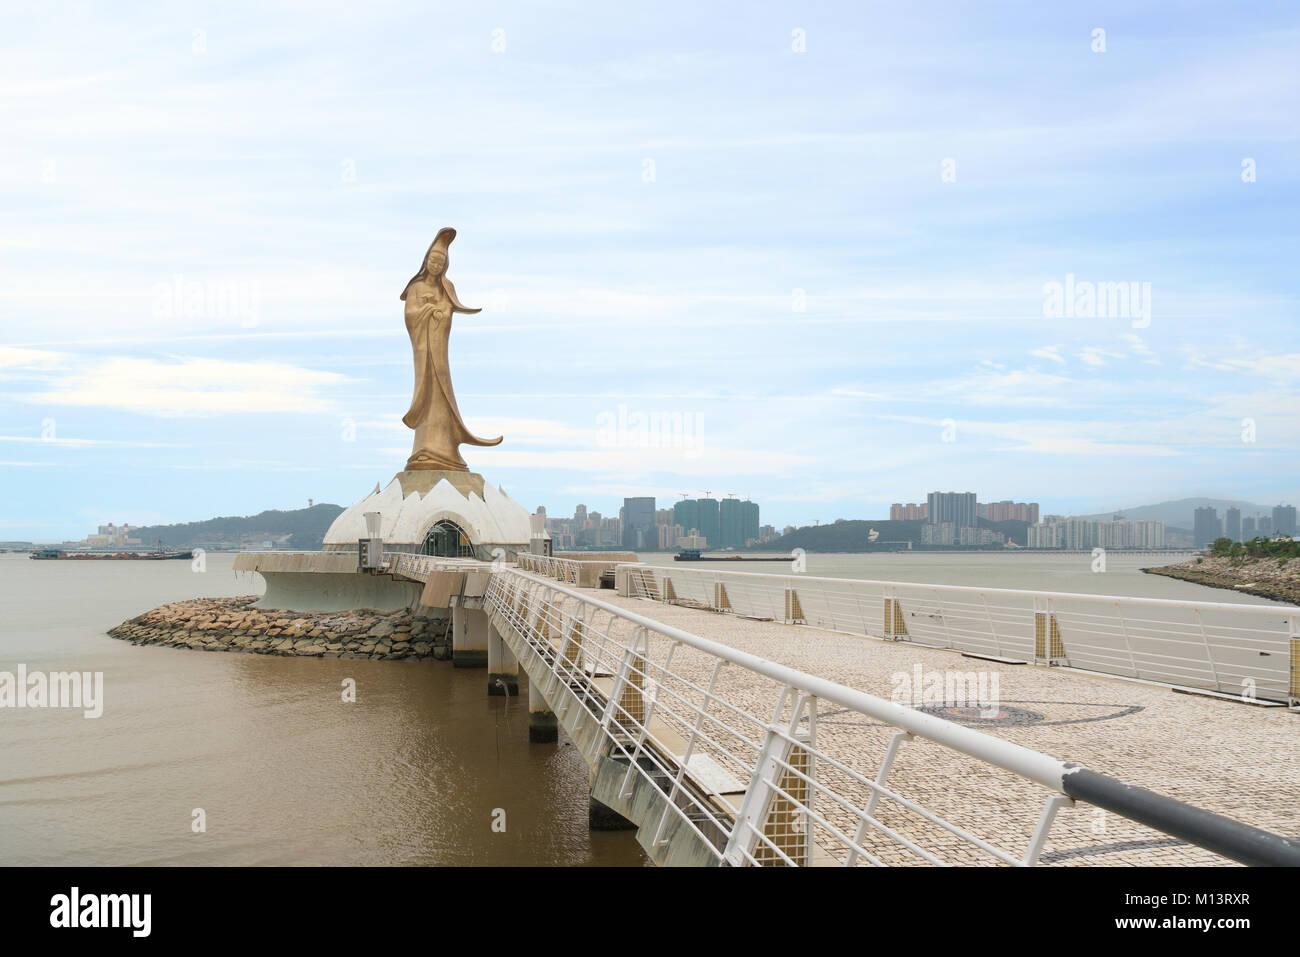 La statua di Kun Lam la dea della misericordia e della compassione in Macau. Questo posto è una popolare attrazione turistica di Macao. Foto Stock